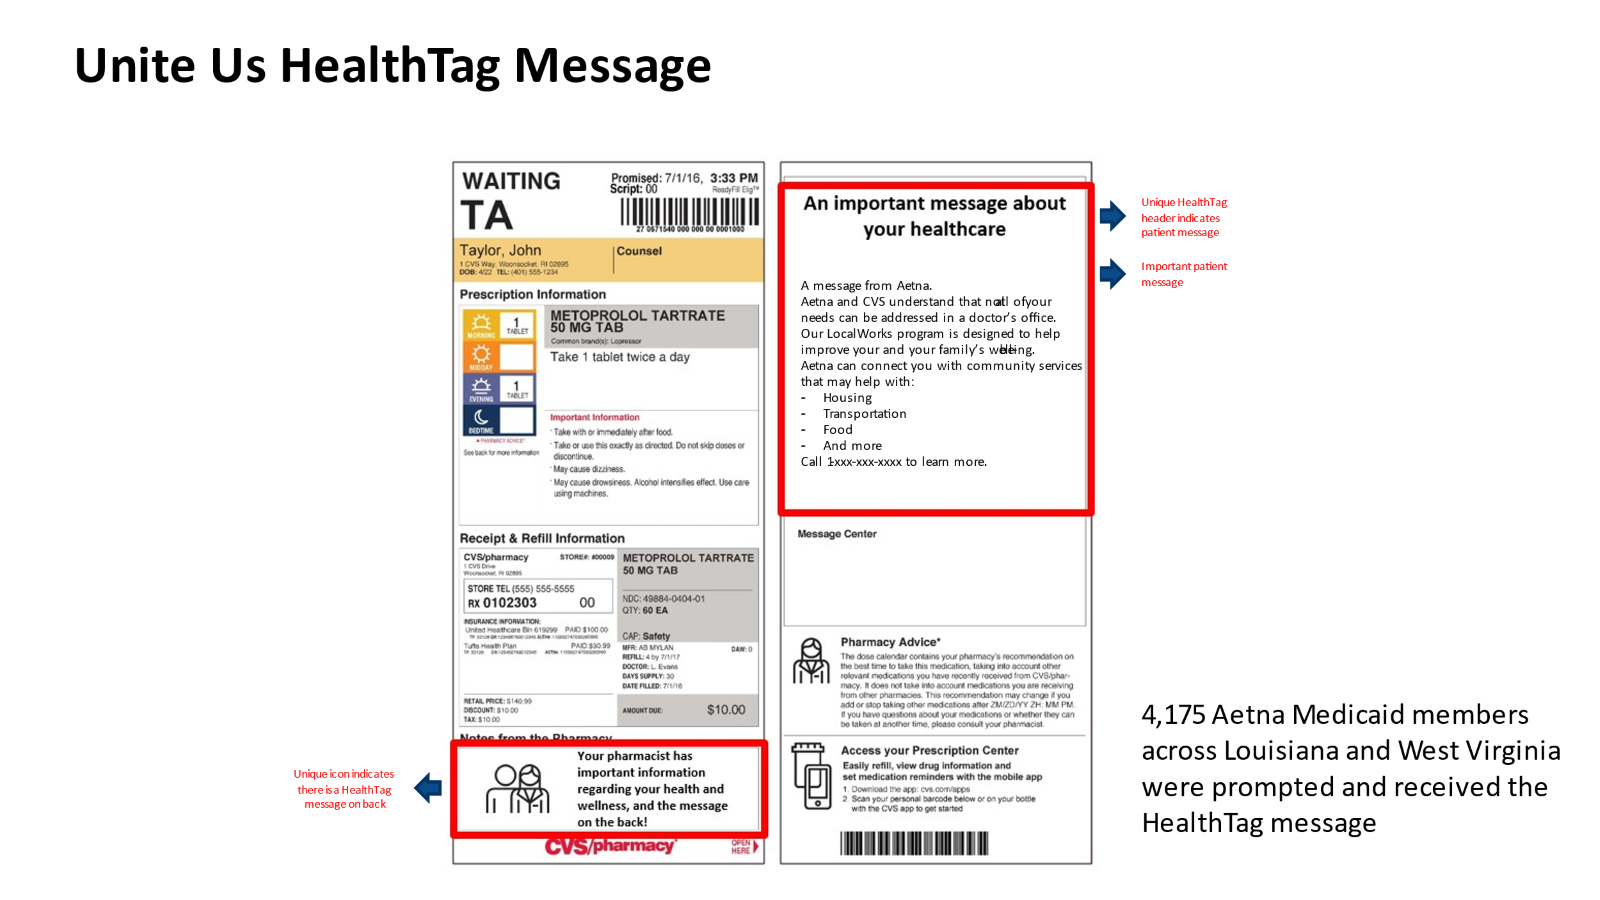 Unite Us HealthTag Message image of prescription label